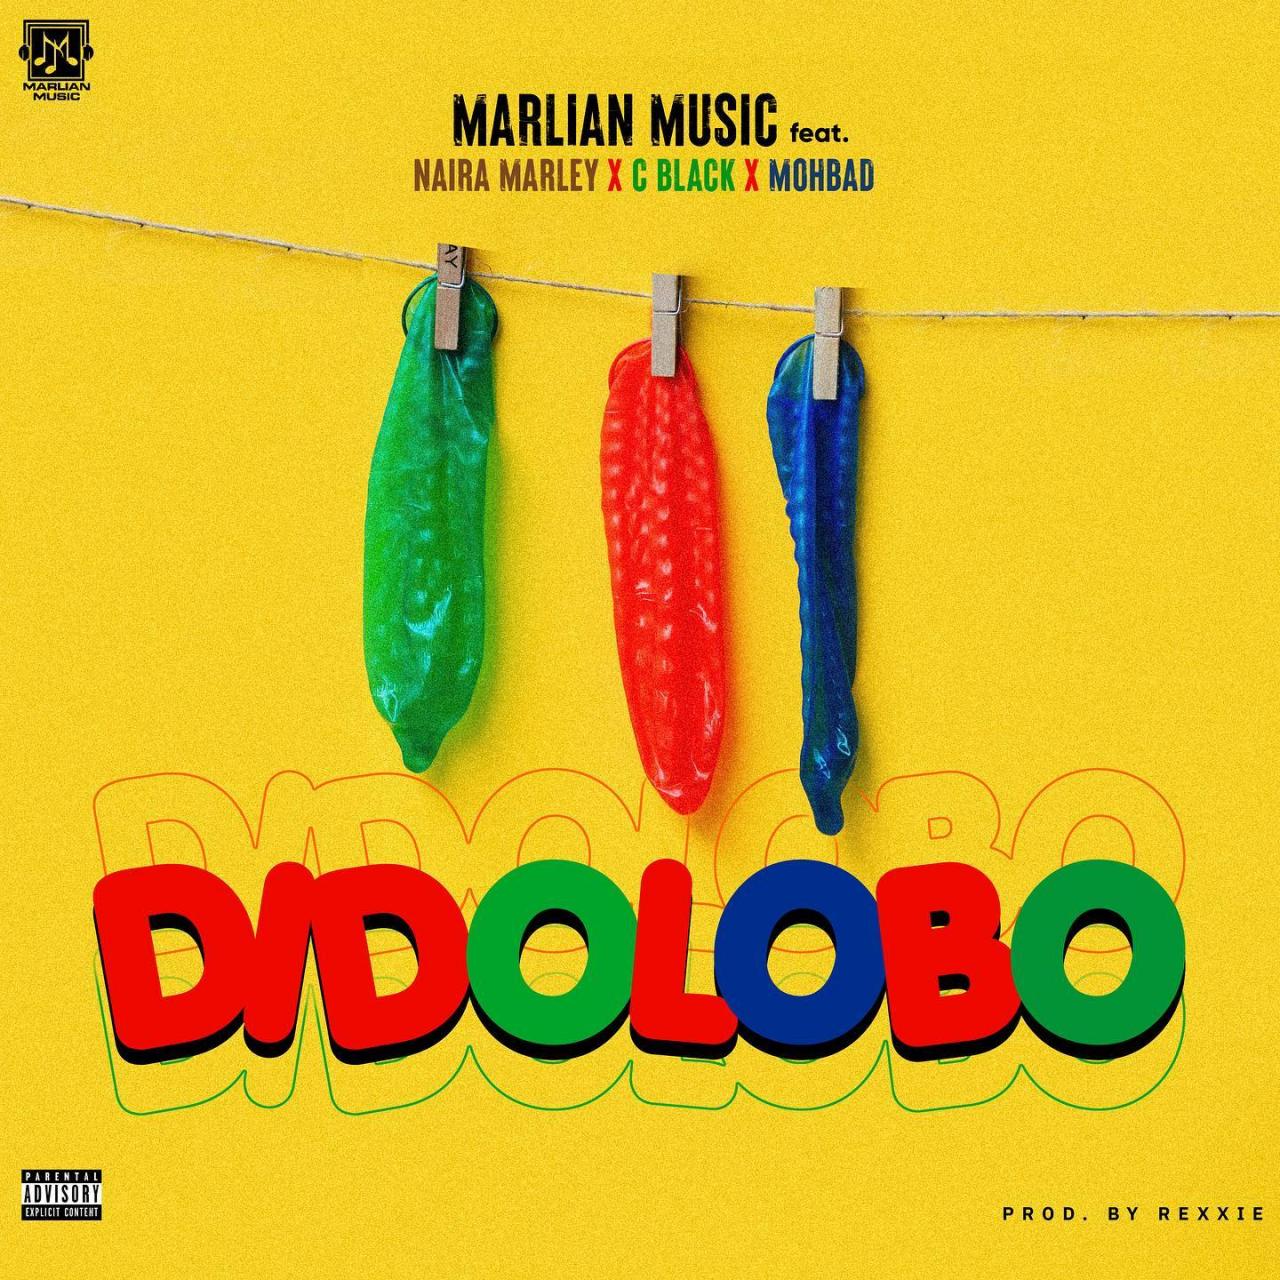 Naira Marley – Dido Lobo (New Song)
Dido Lobo by Naira Marley – Mp3 Download